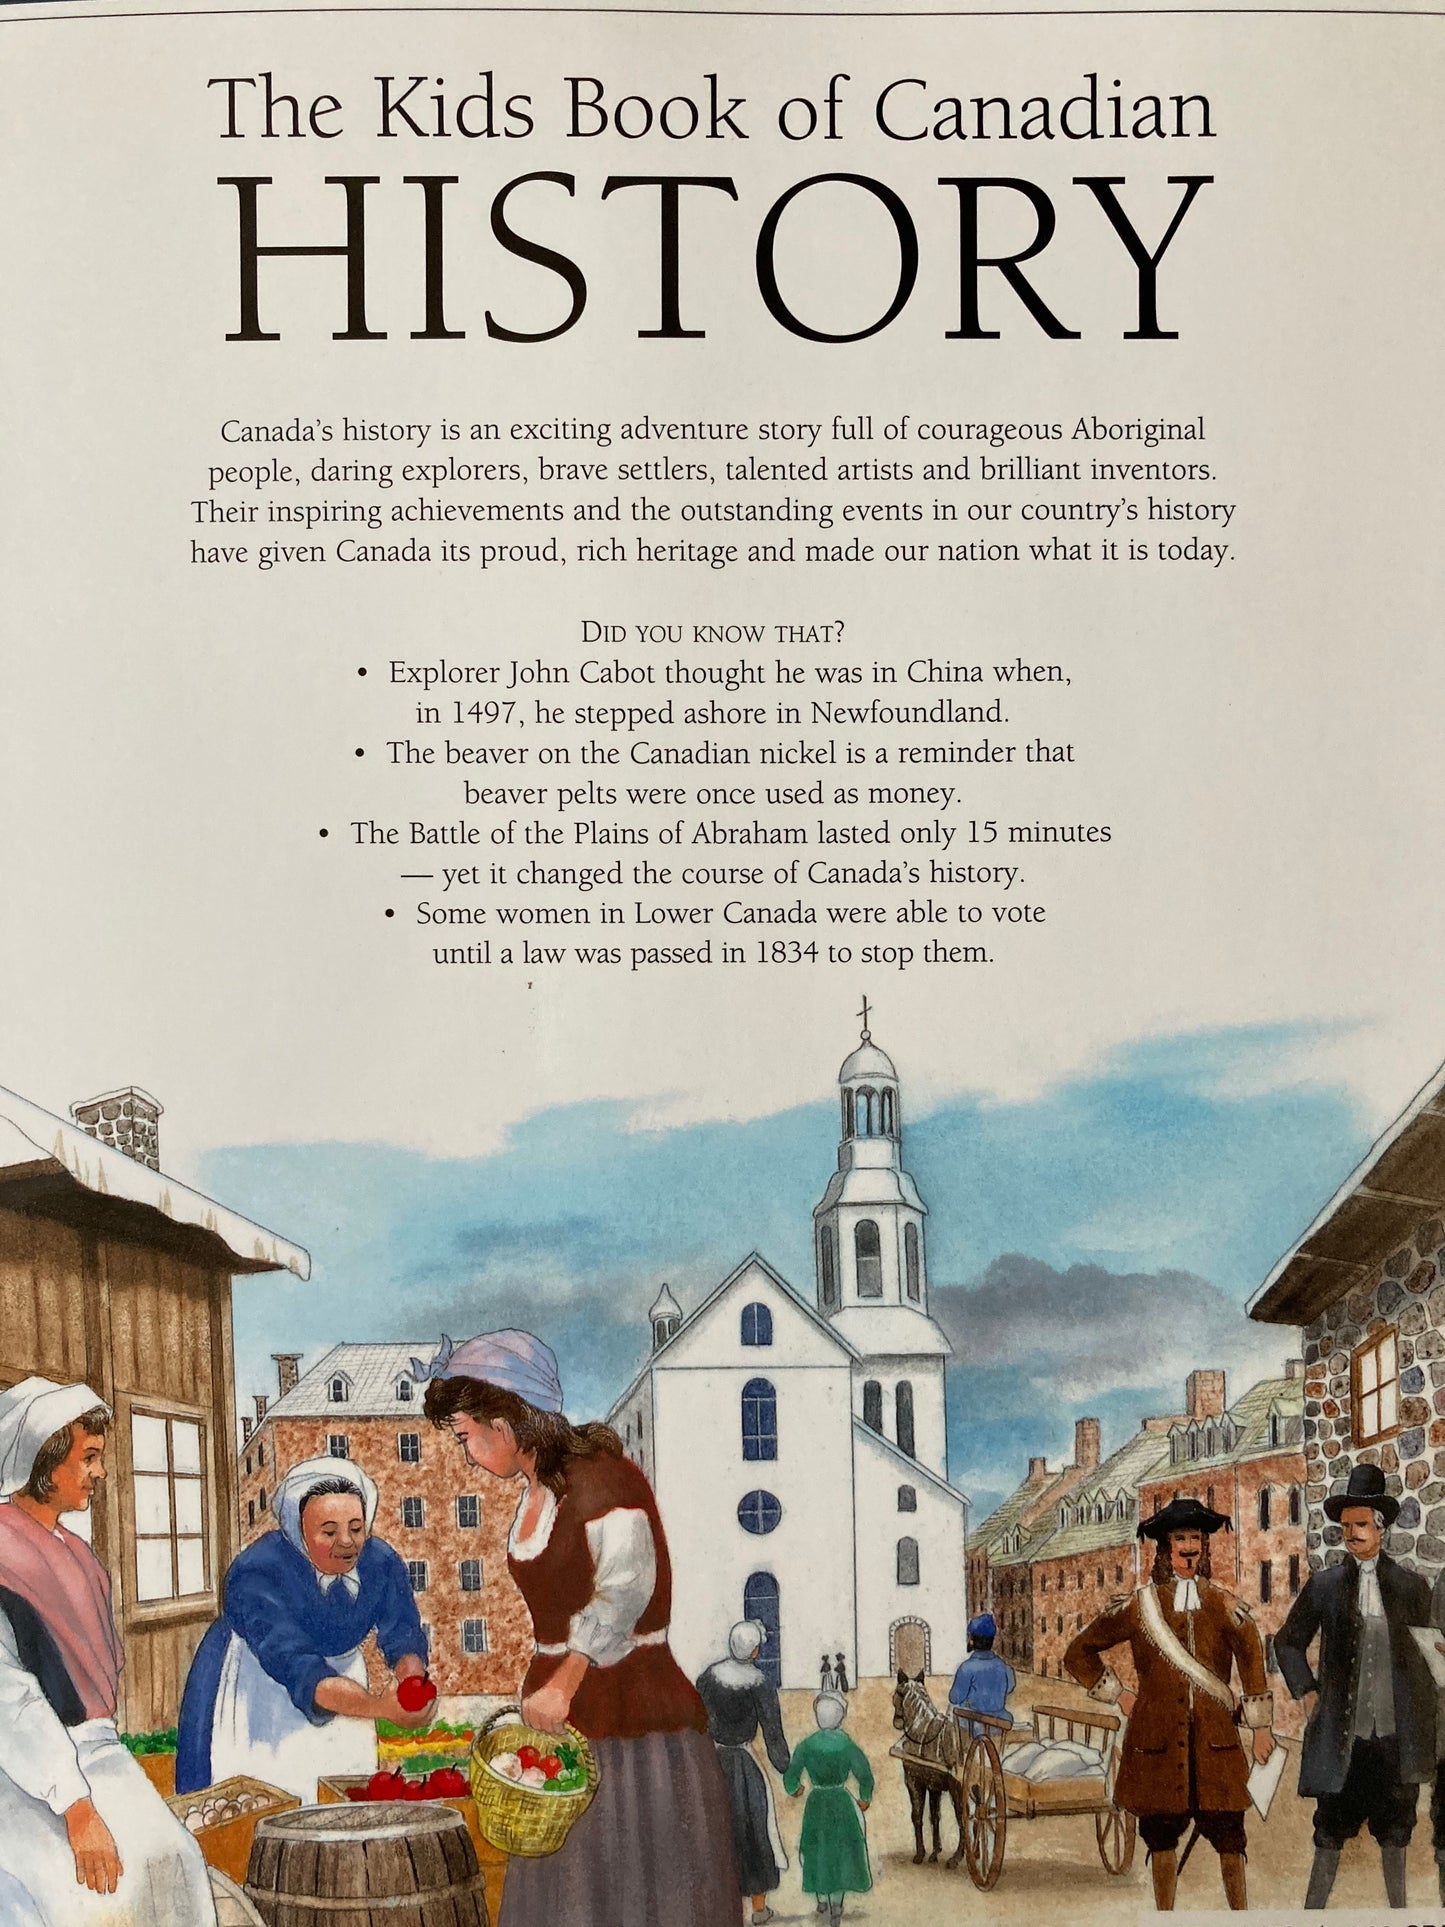 Livre éducatif - Le livre pour enfants sur l'HISTOIRE CANADIENNE